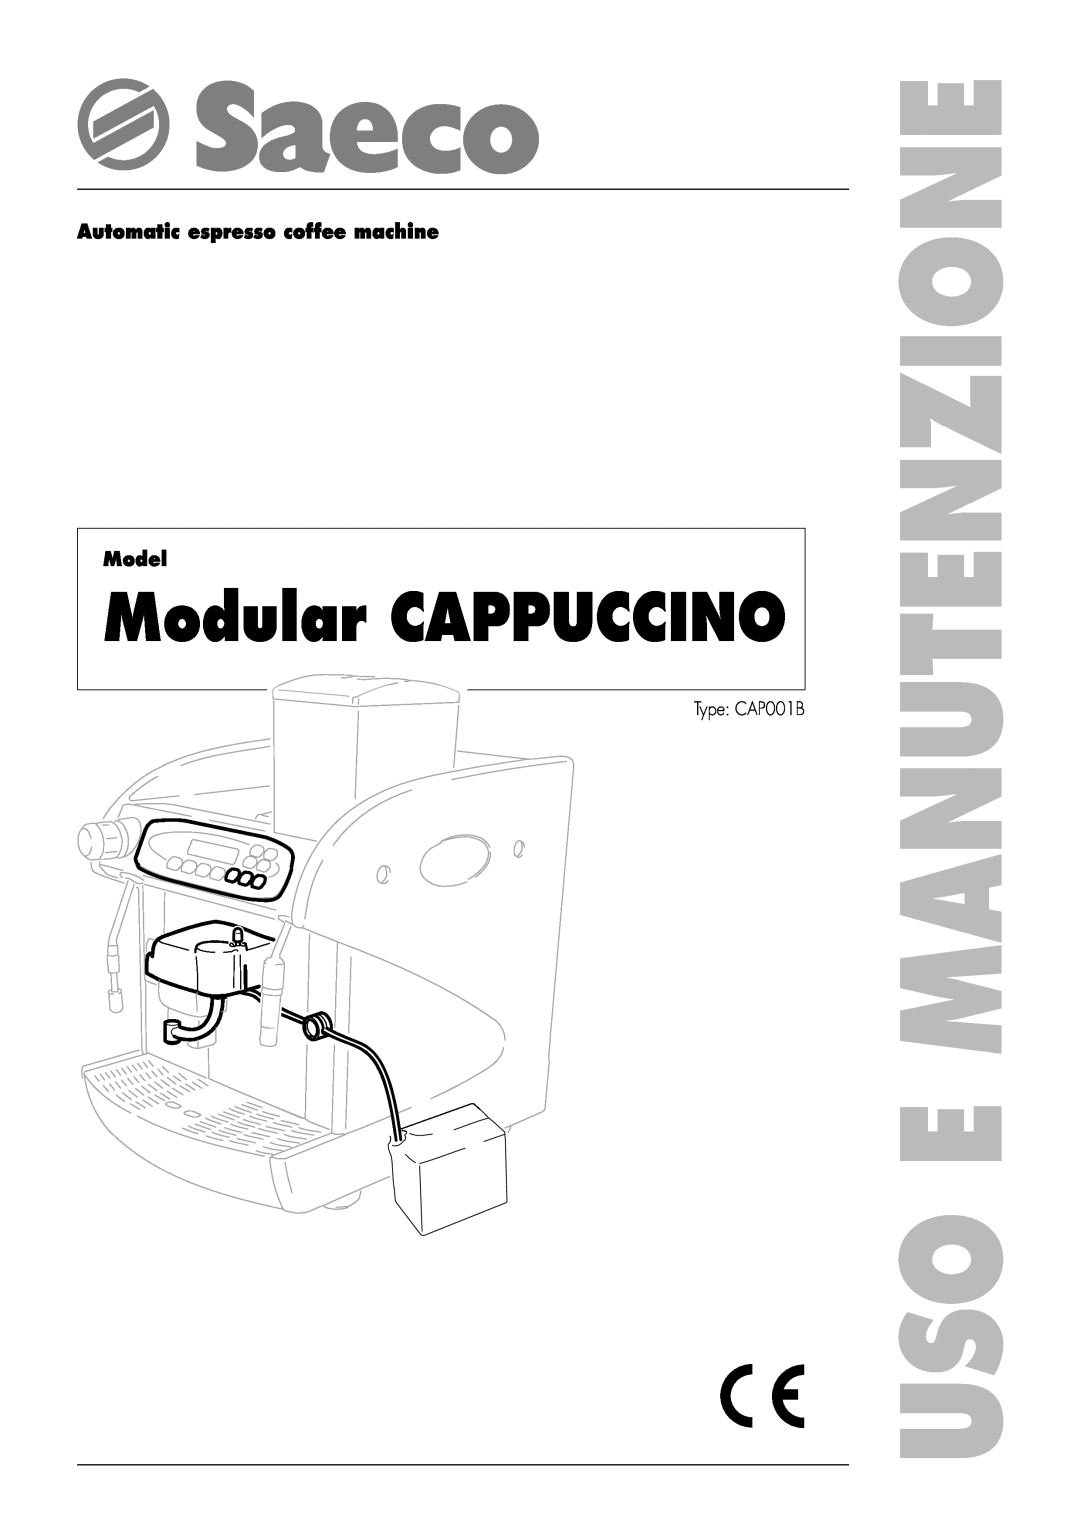 Saeco Coffee Makers CAP001B manual Automatic espresso coffee machine Model, Uso E Manutenzione, Modular CAPPUCCINO 